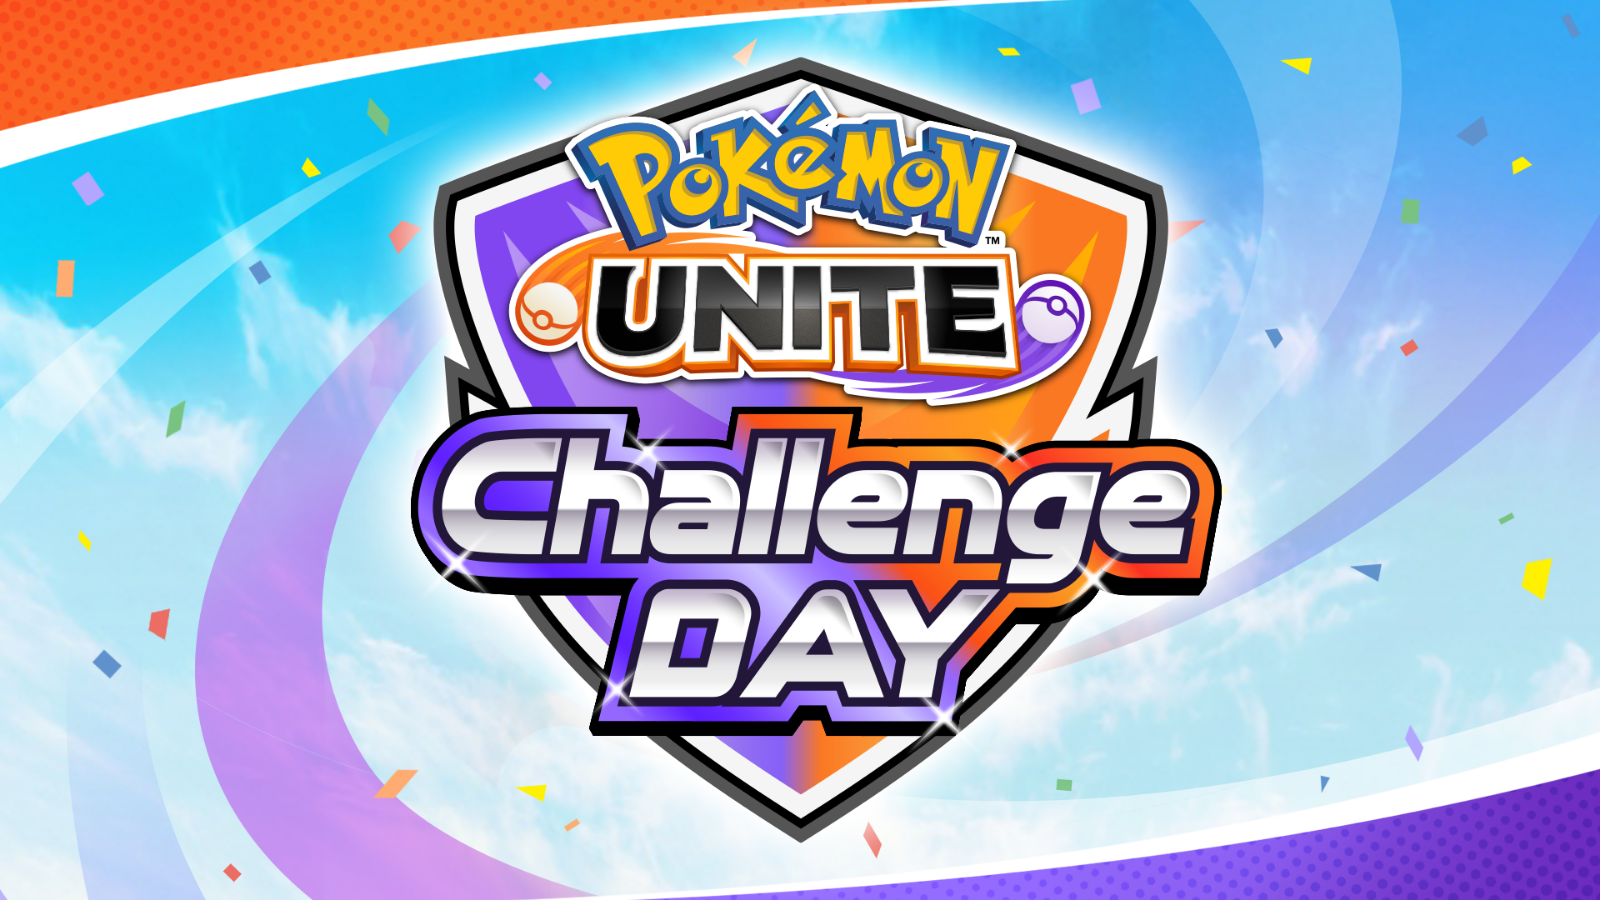 【大会情報】【個人参加制】Pokémon UNITE Challenge DAY 09.11 スイスドロー形式【2022年9月11日】